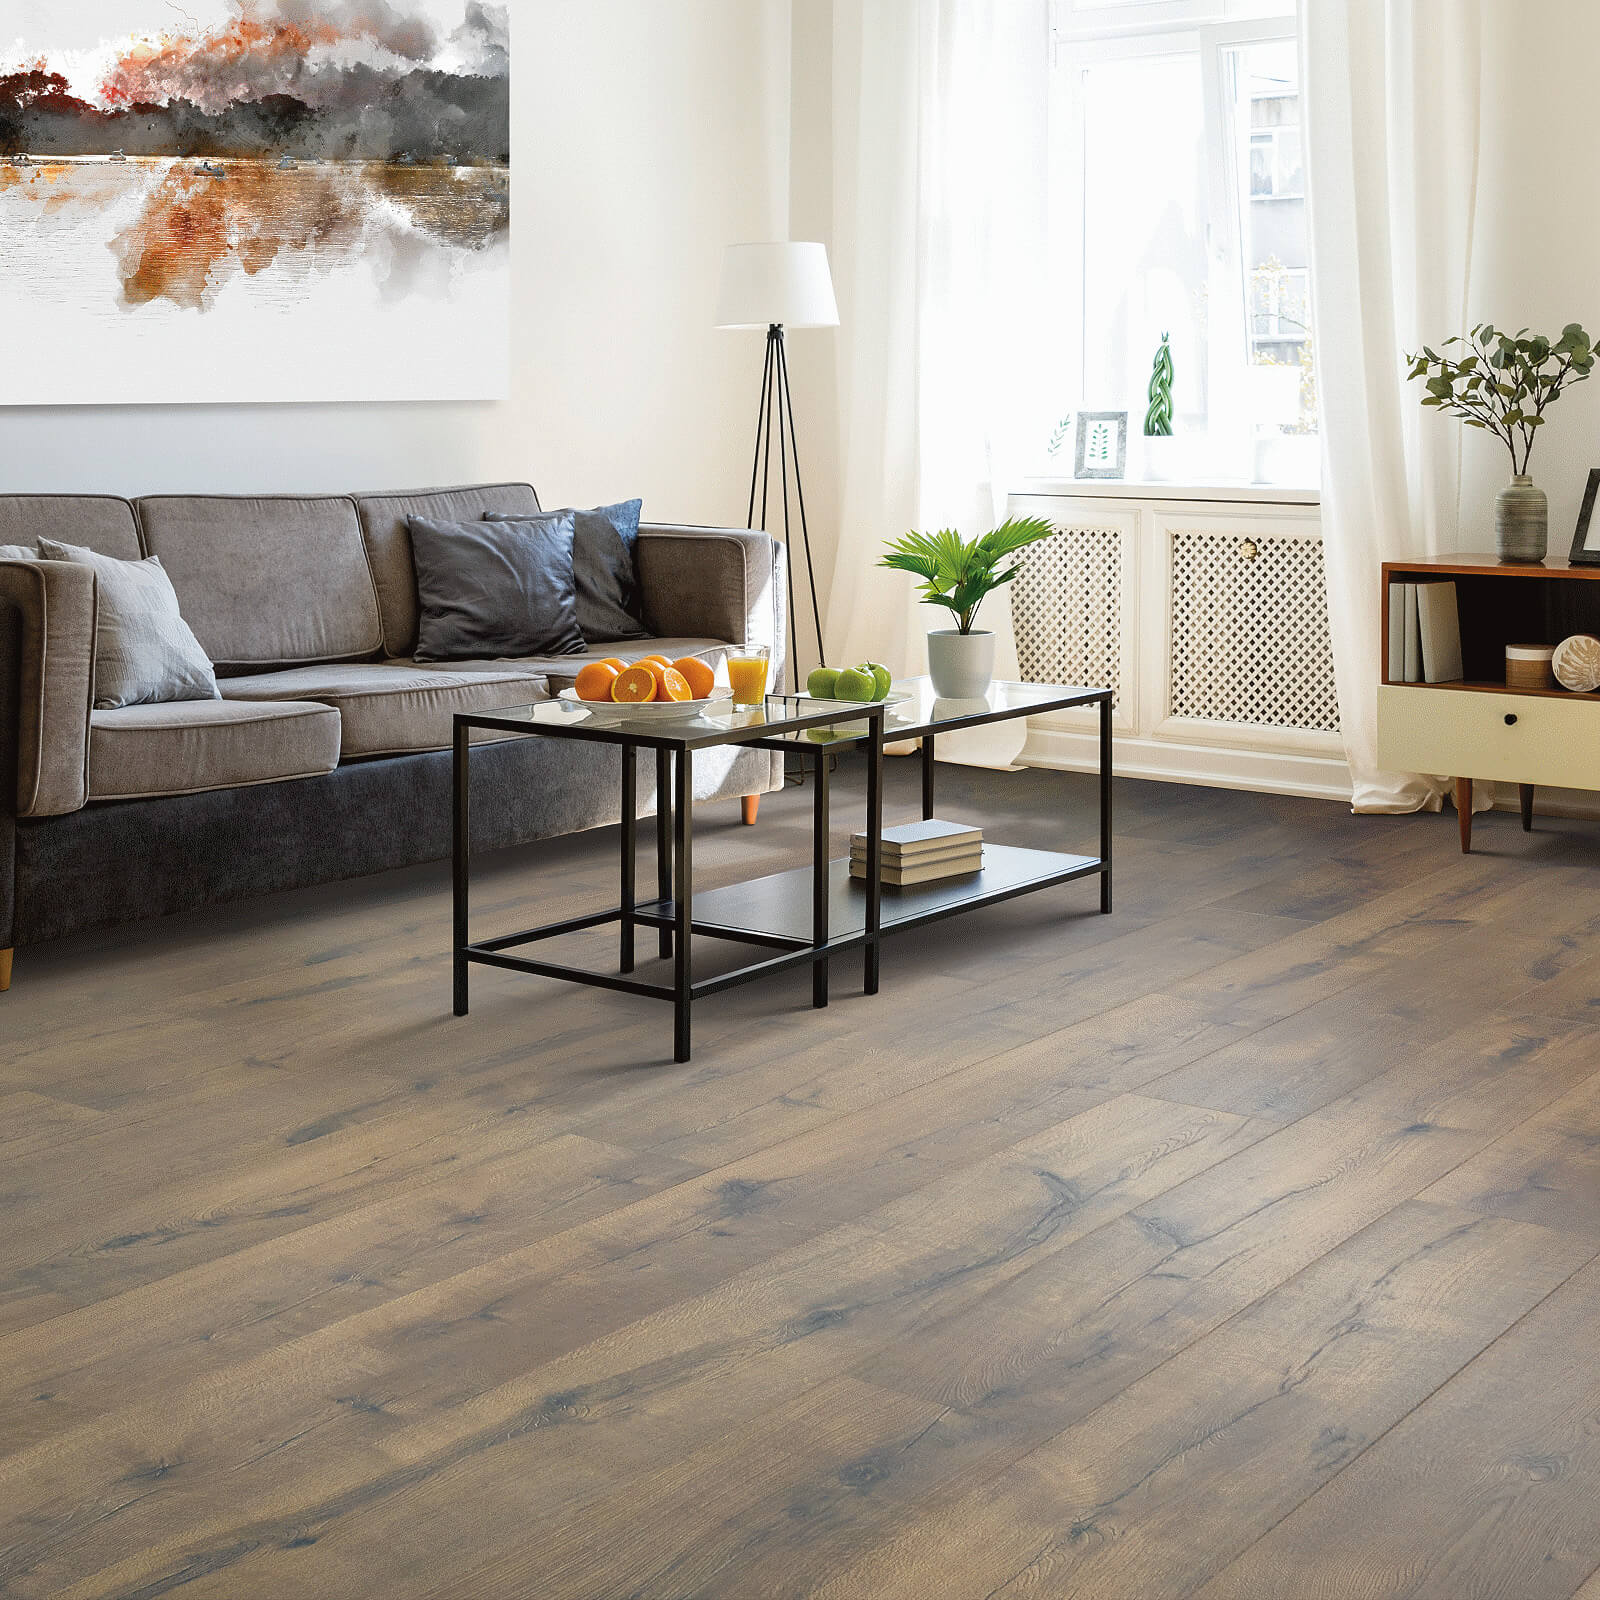 Laminate flooring in living room | Dehart Tile